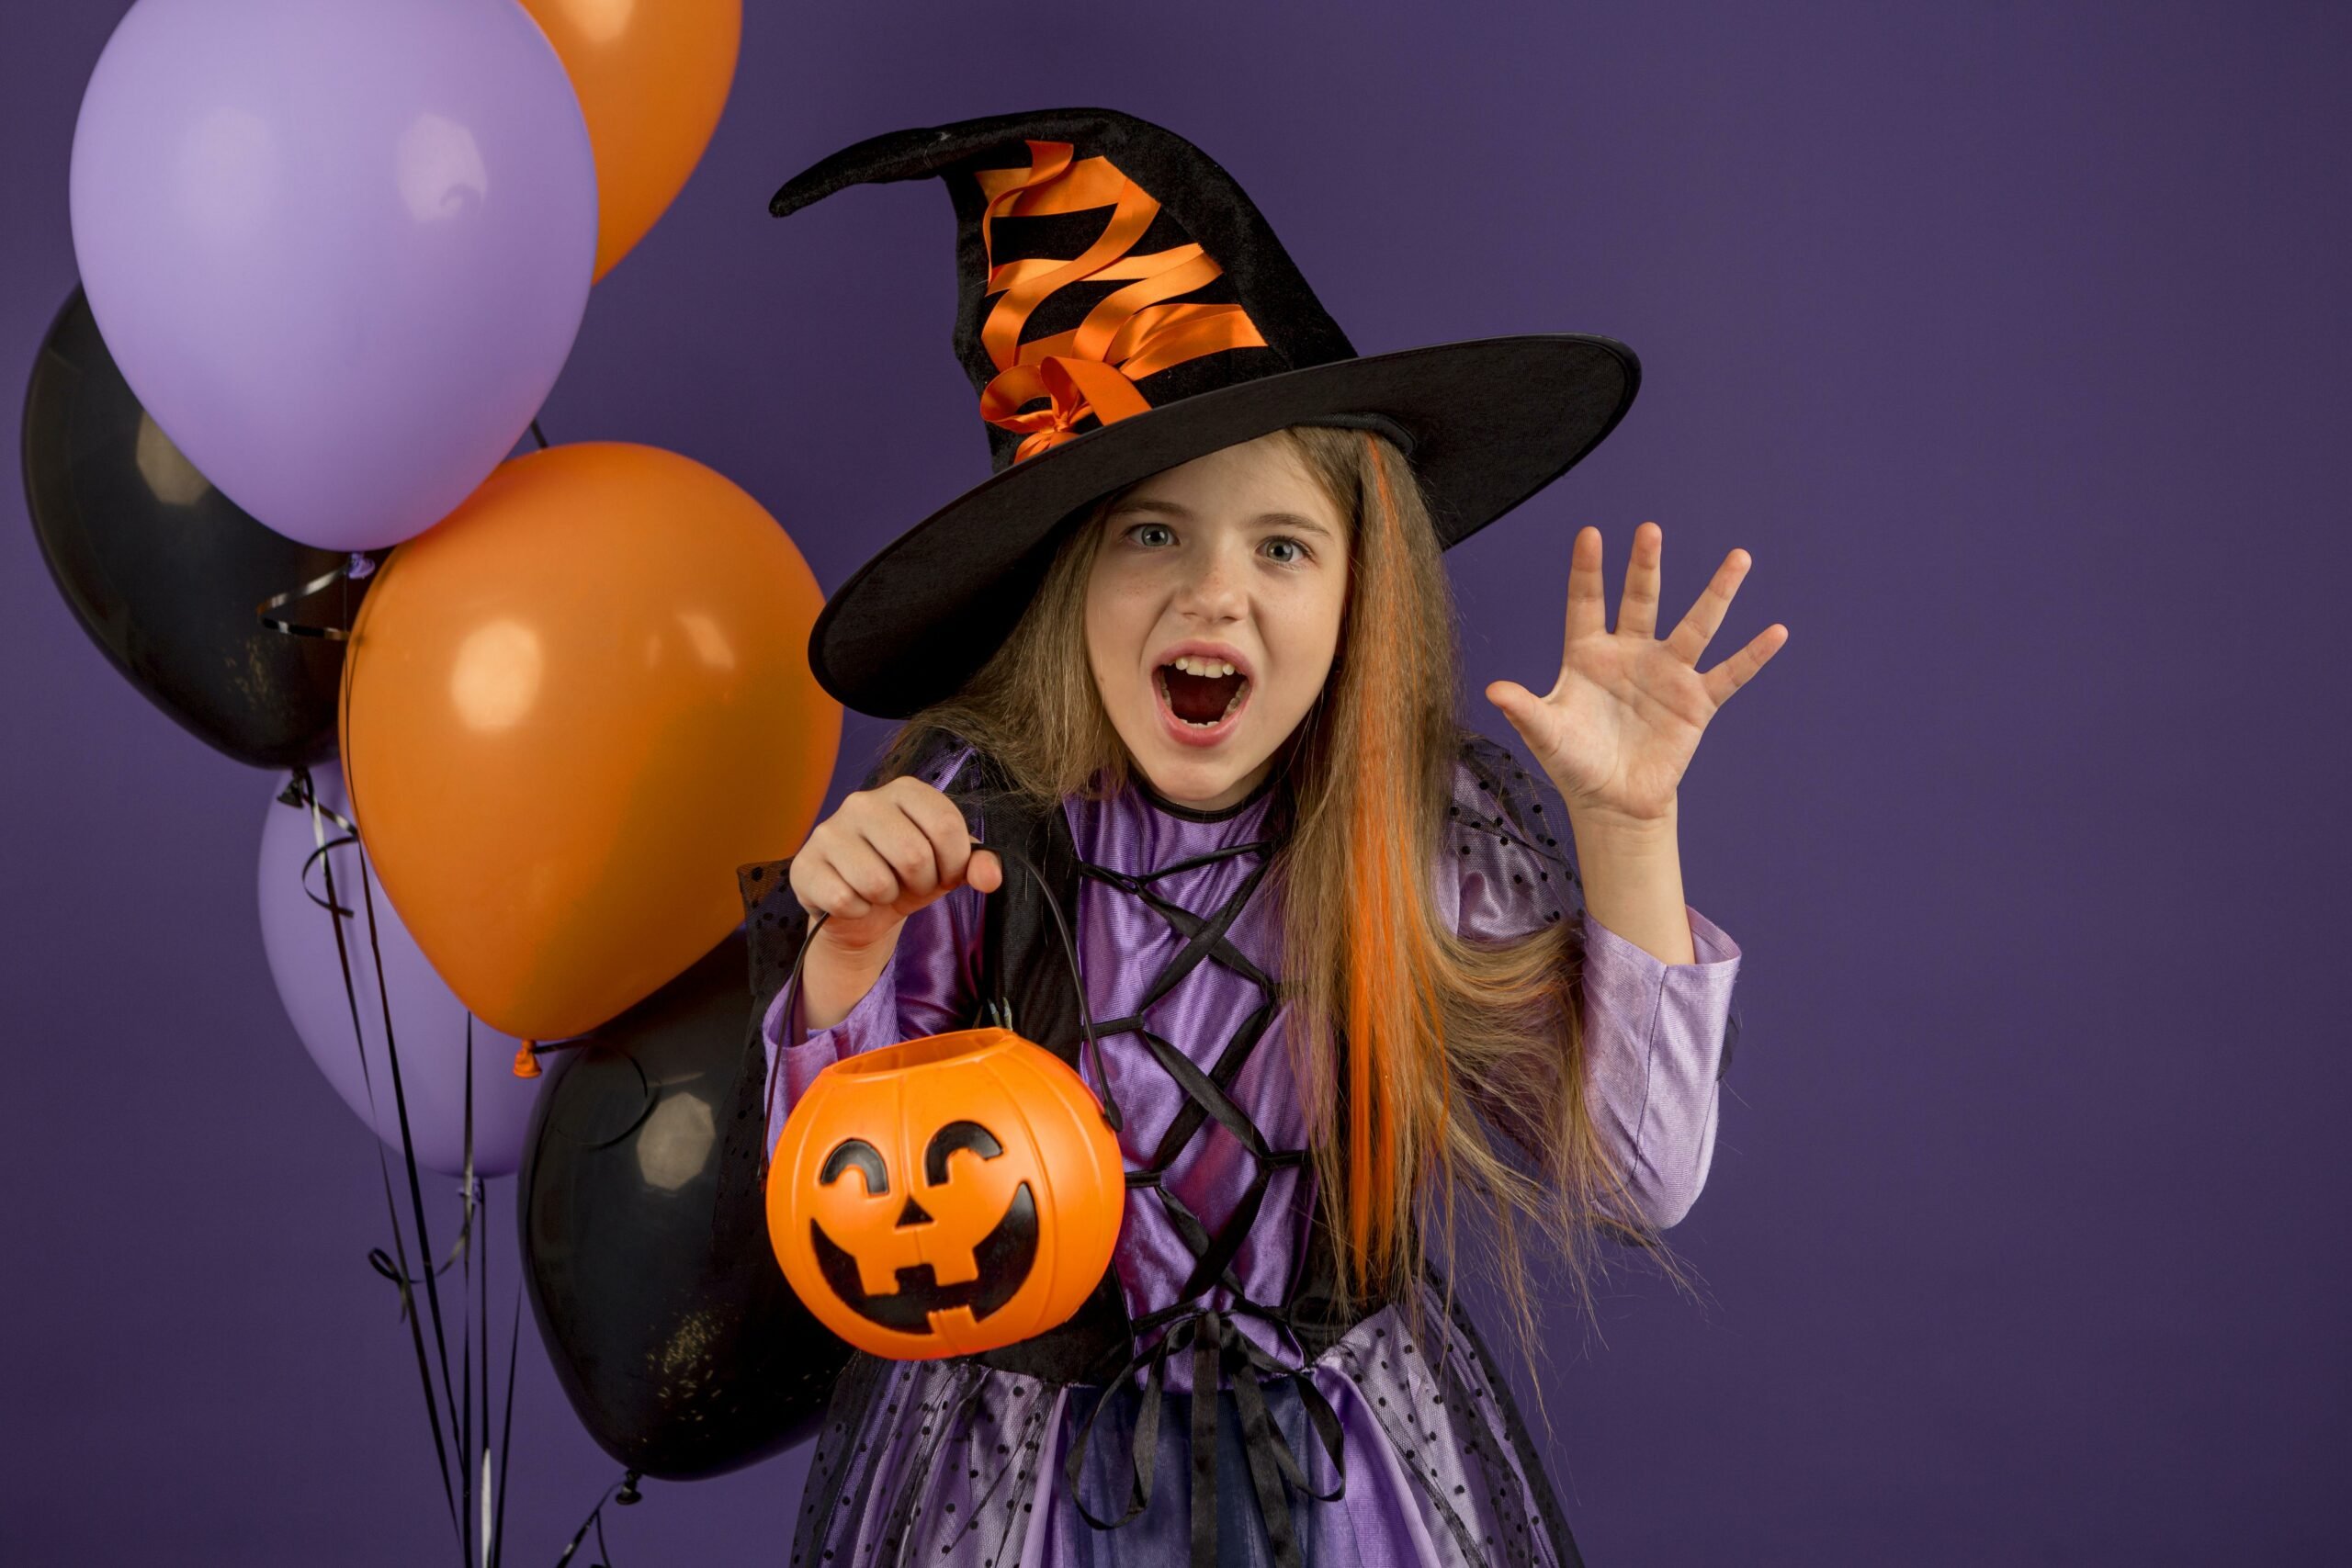 15 ideias de fantasias em família para o Halloween